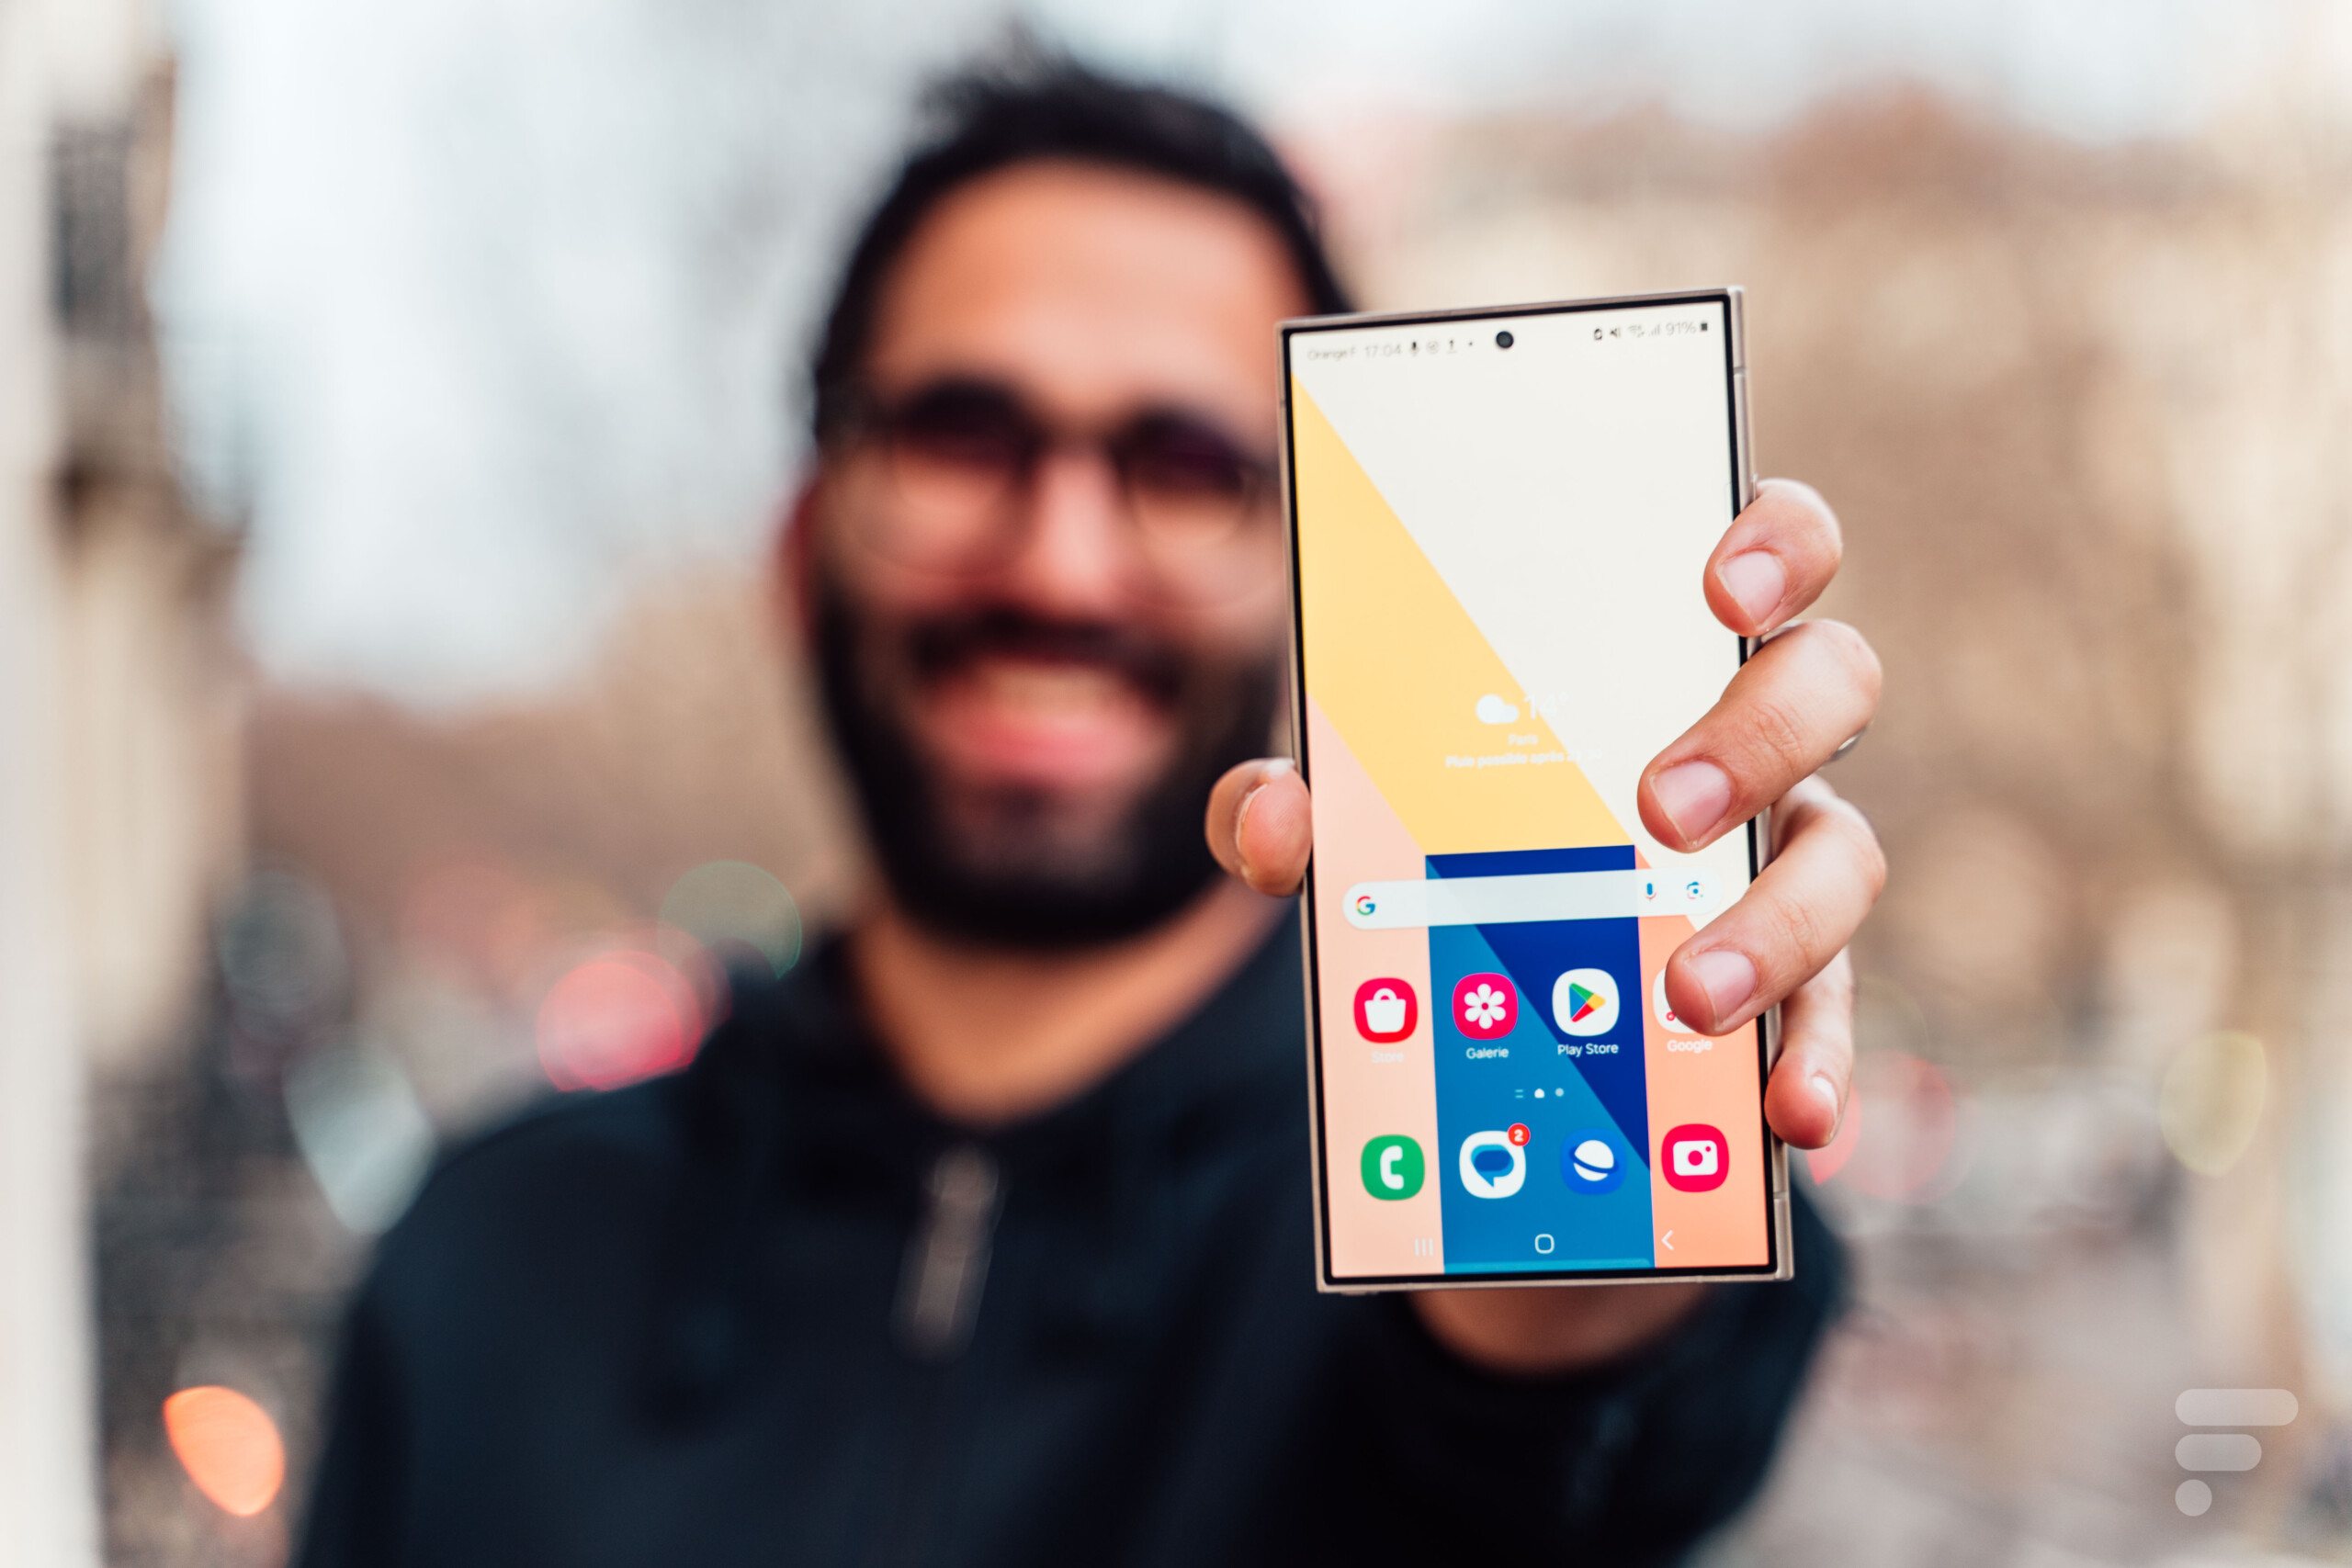 Test du Samsung Galaxy S24 Ultra : notre avis sur le smartphone haut de  gamme